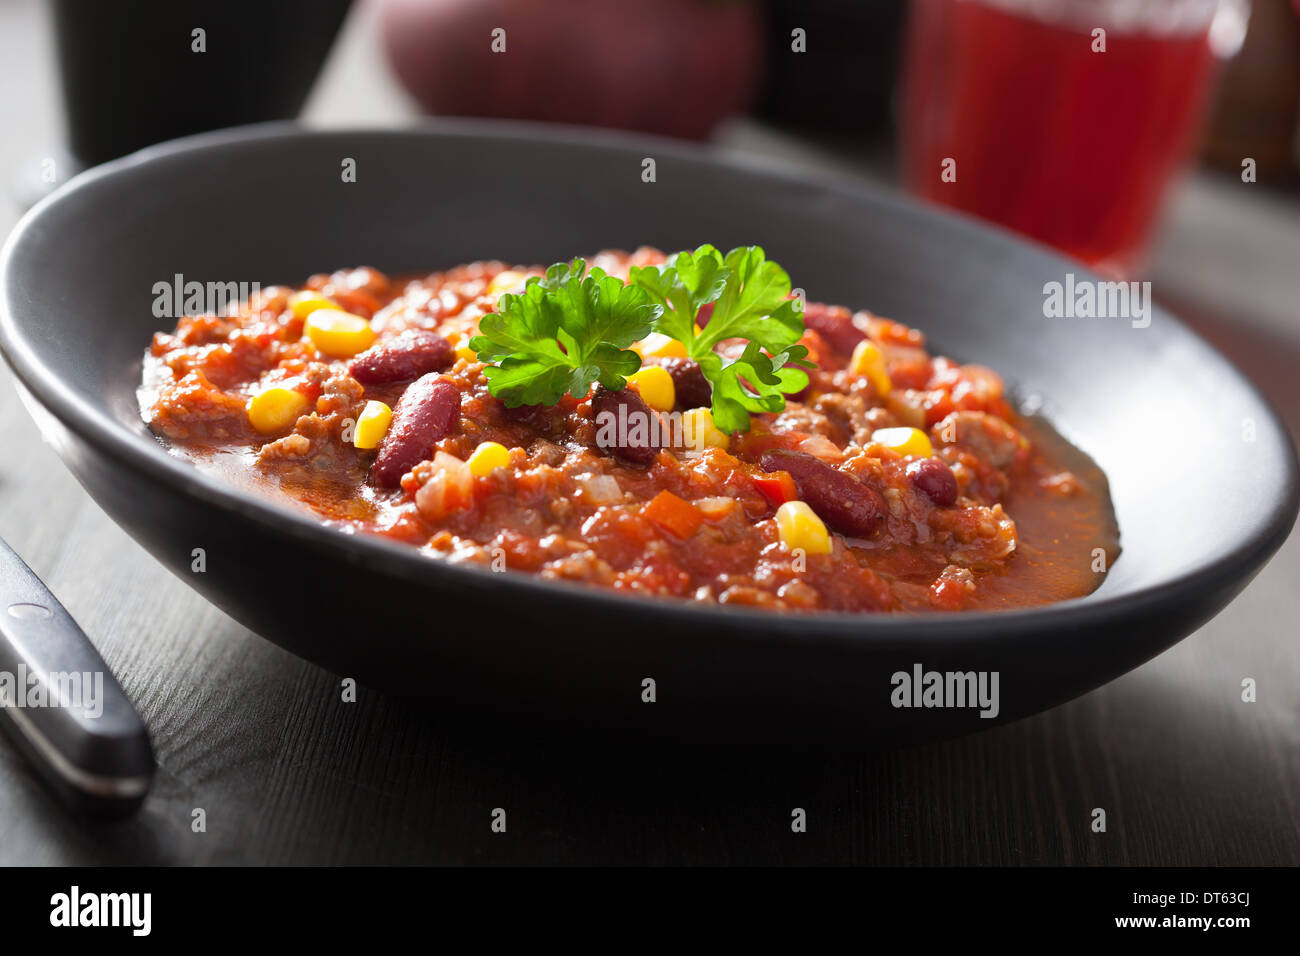 mexican chili con carne in black plate Stock Photo